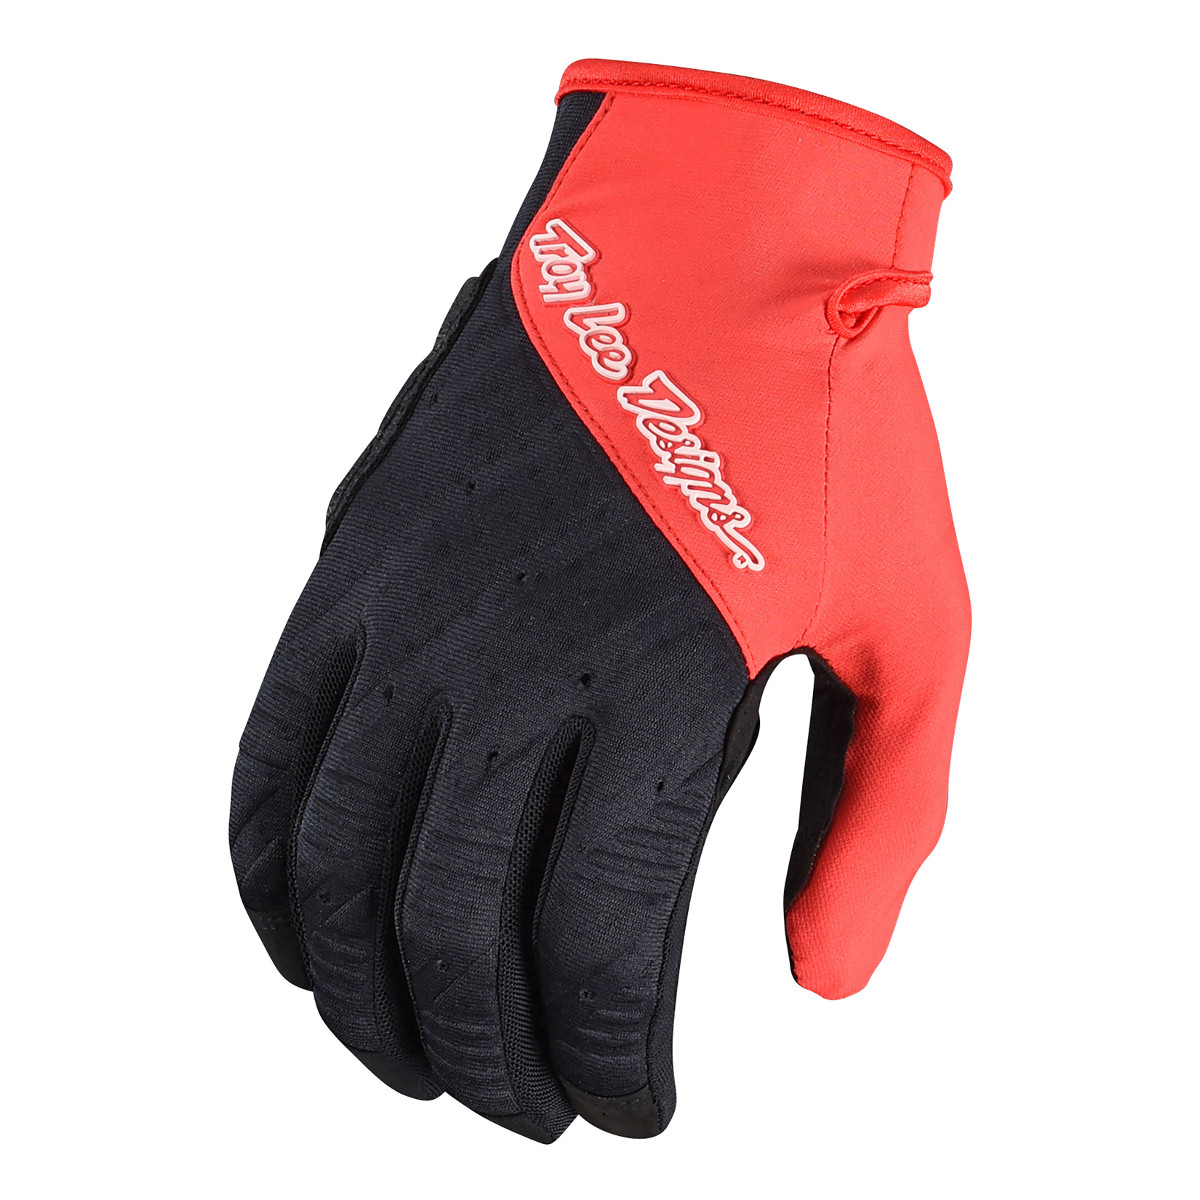 Troy Lee Designs Bike Gloves Ruckus Red